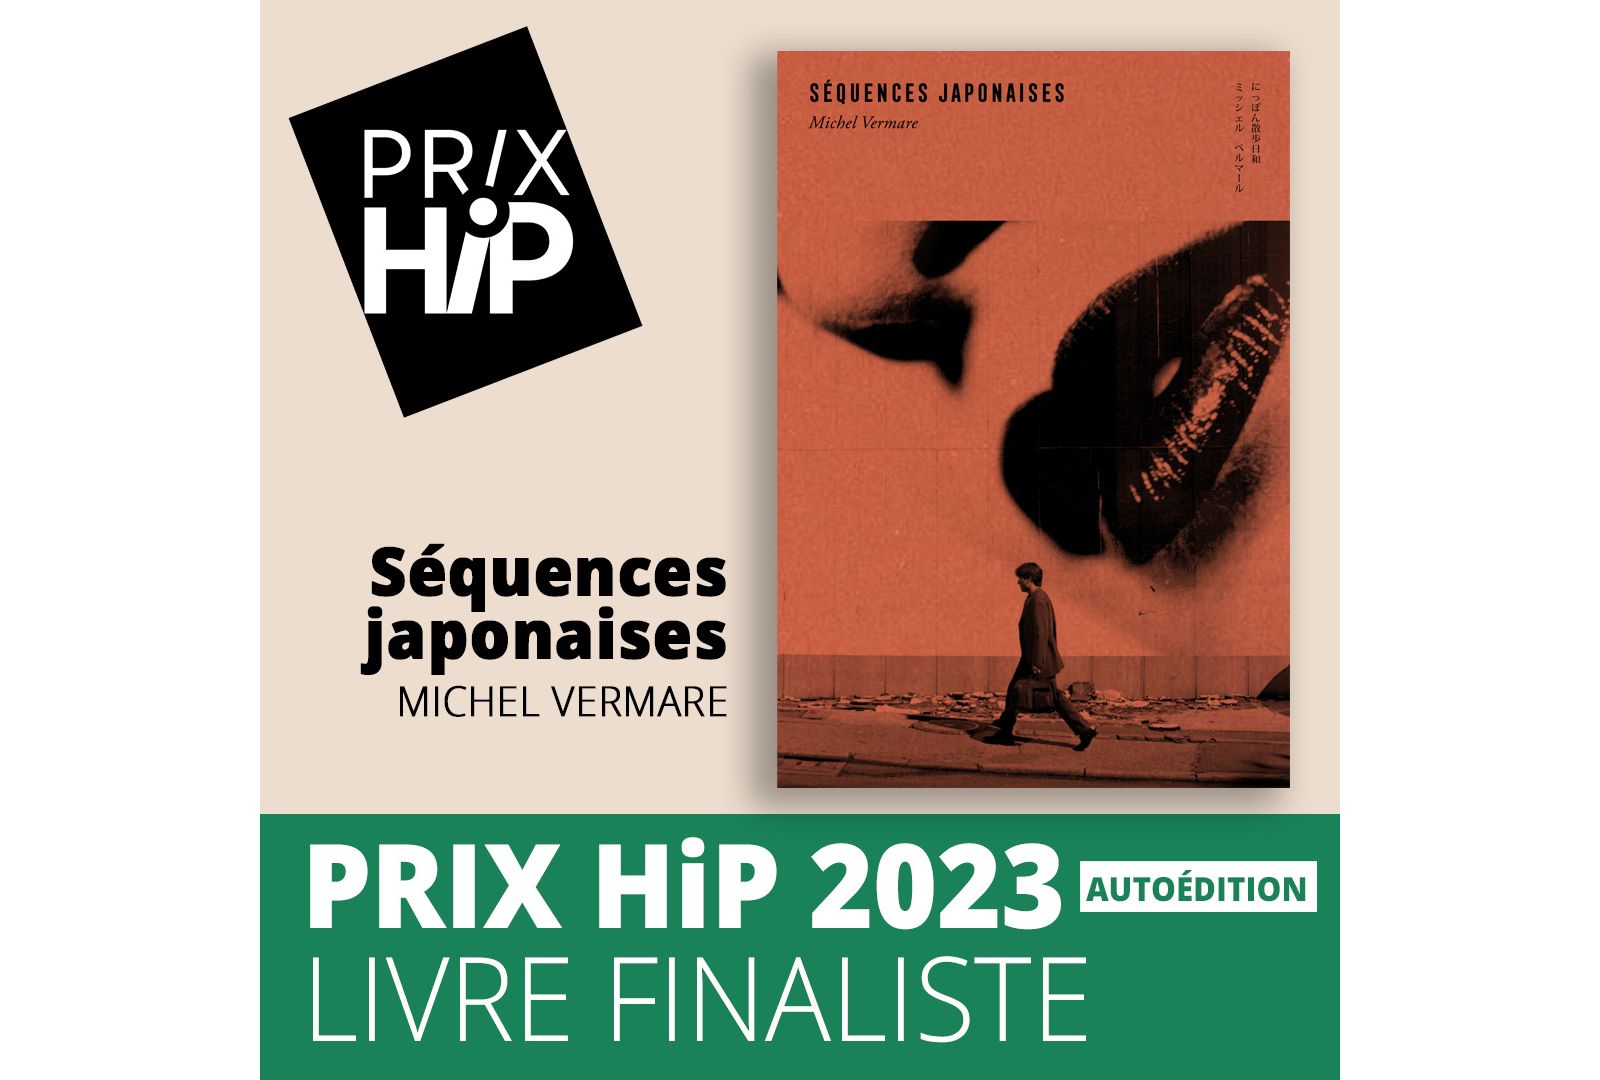 Les prix HiP 2023 Livre finaliste autoédition